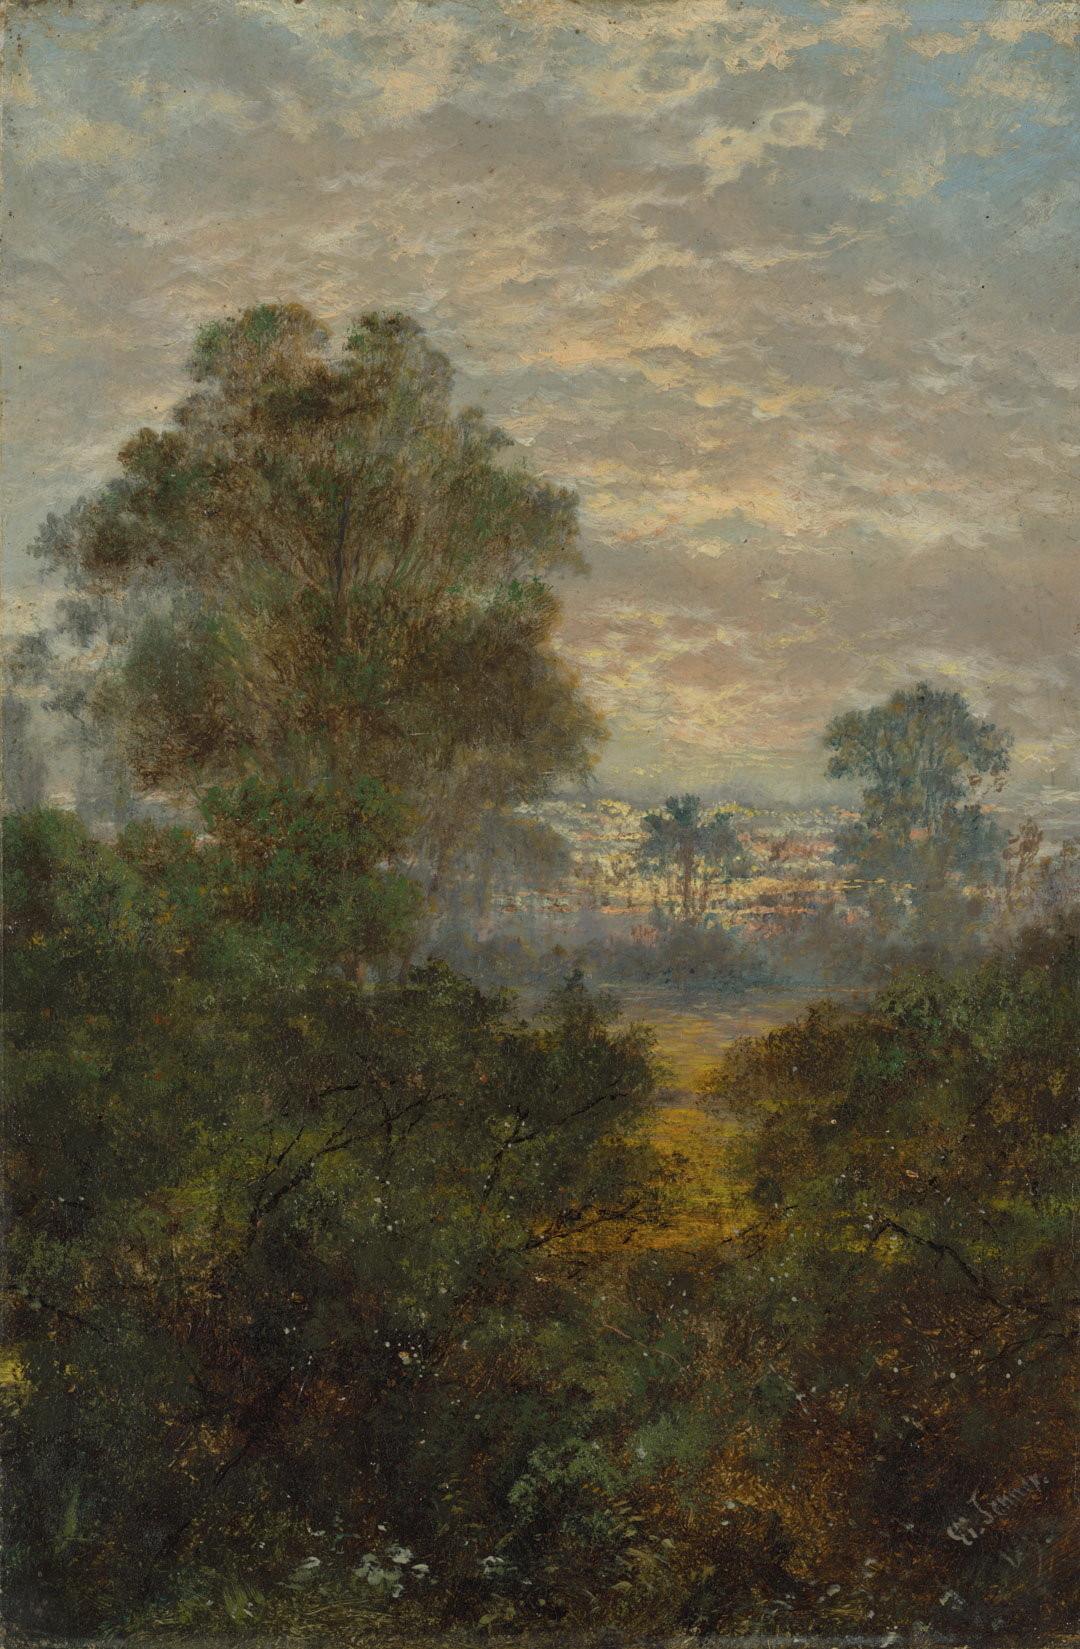 Slider: Raking light, Landscape, sunrise 1893 JENNER, Isaac Walter